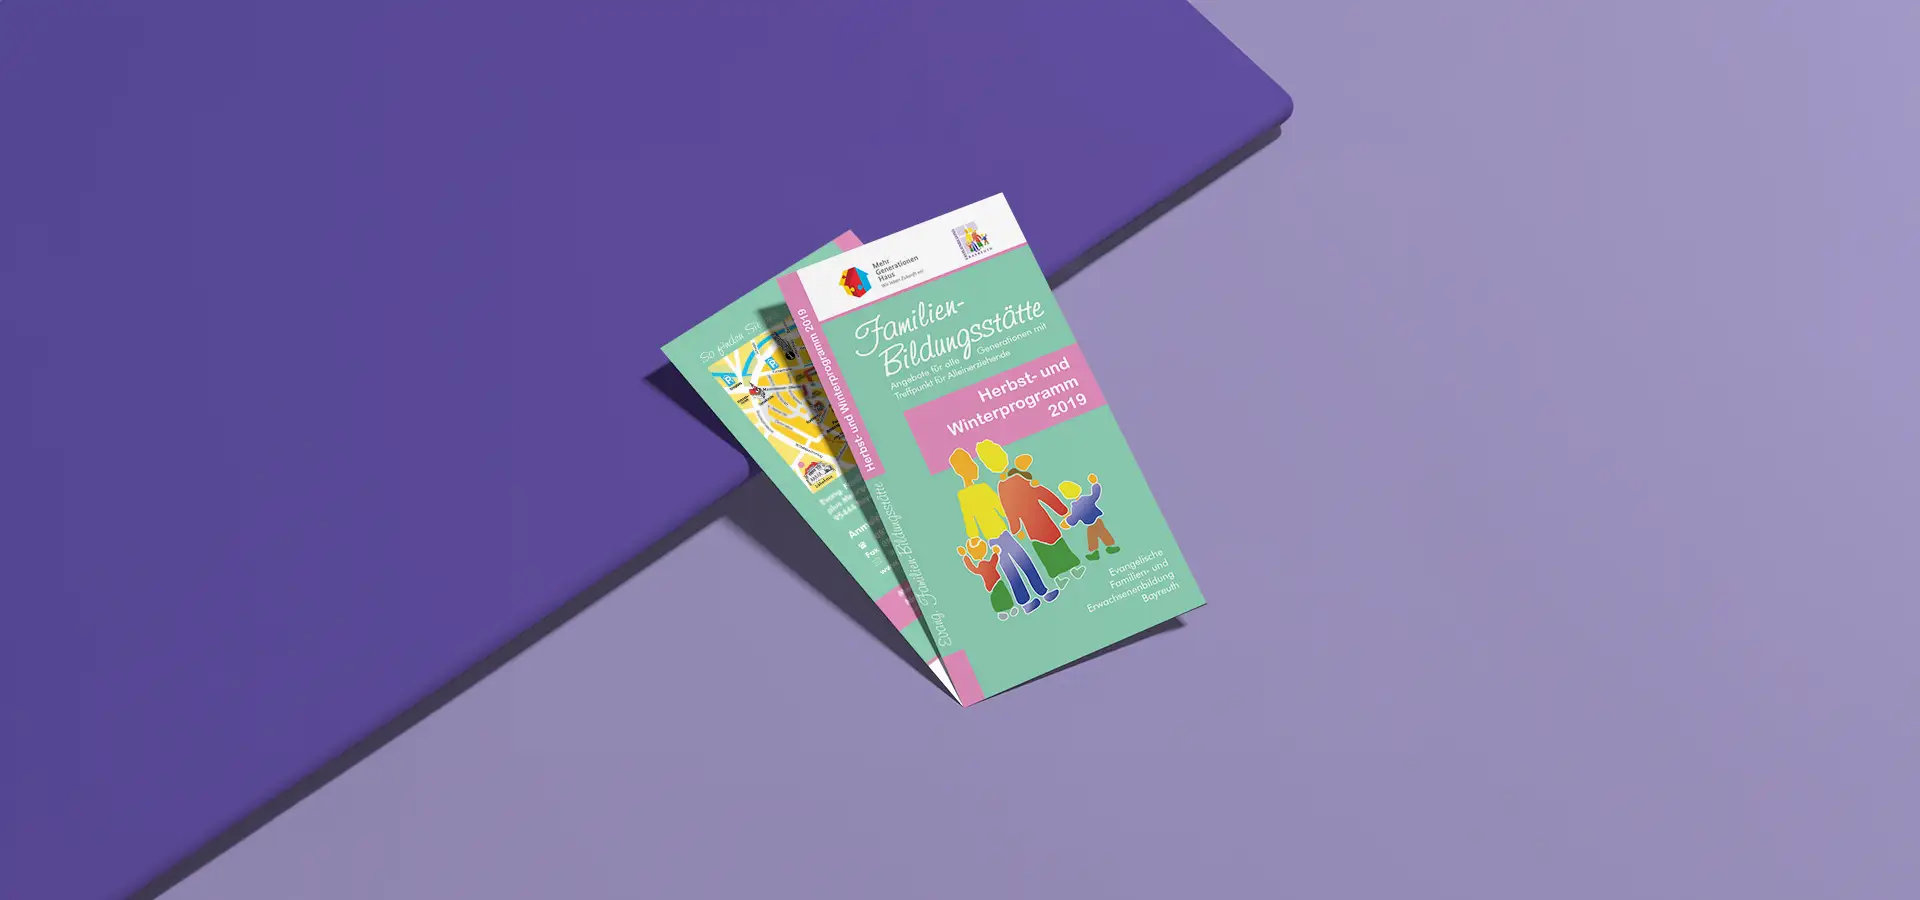 Broschüre für Familien-Bildungsstätte, Herbst/Winterprogramm 2019.